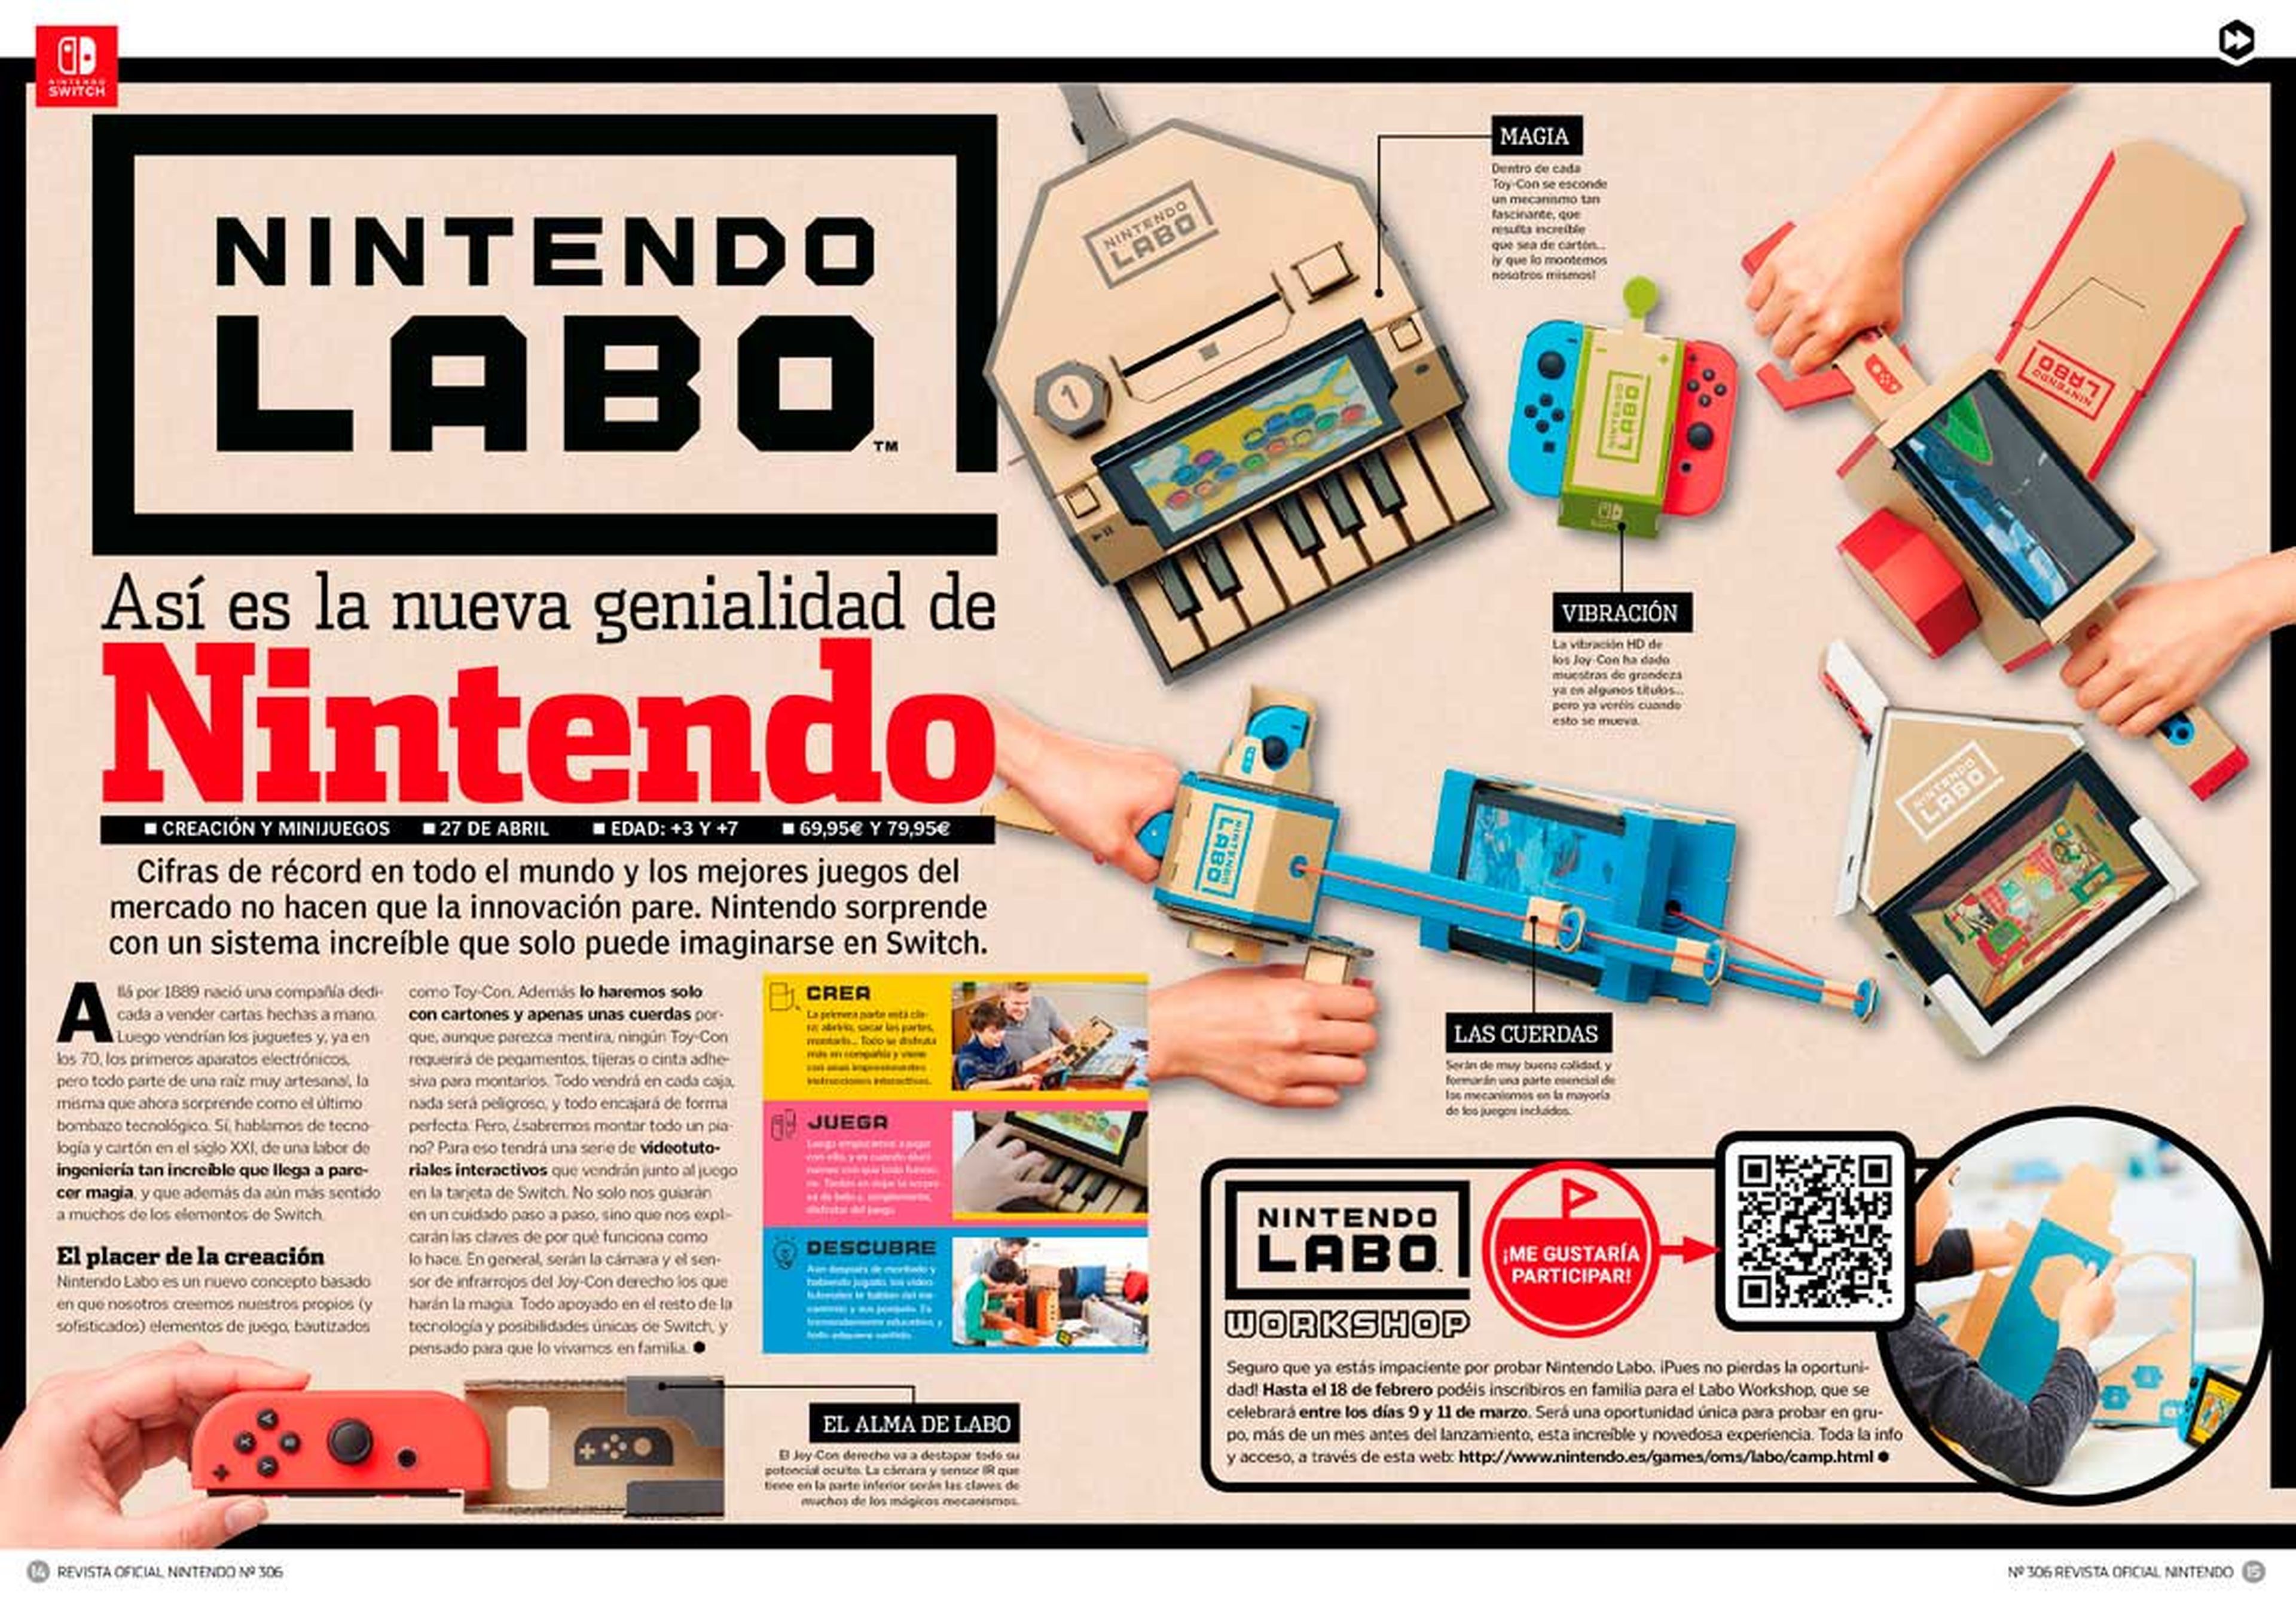 Nintendo Labo RON 306